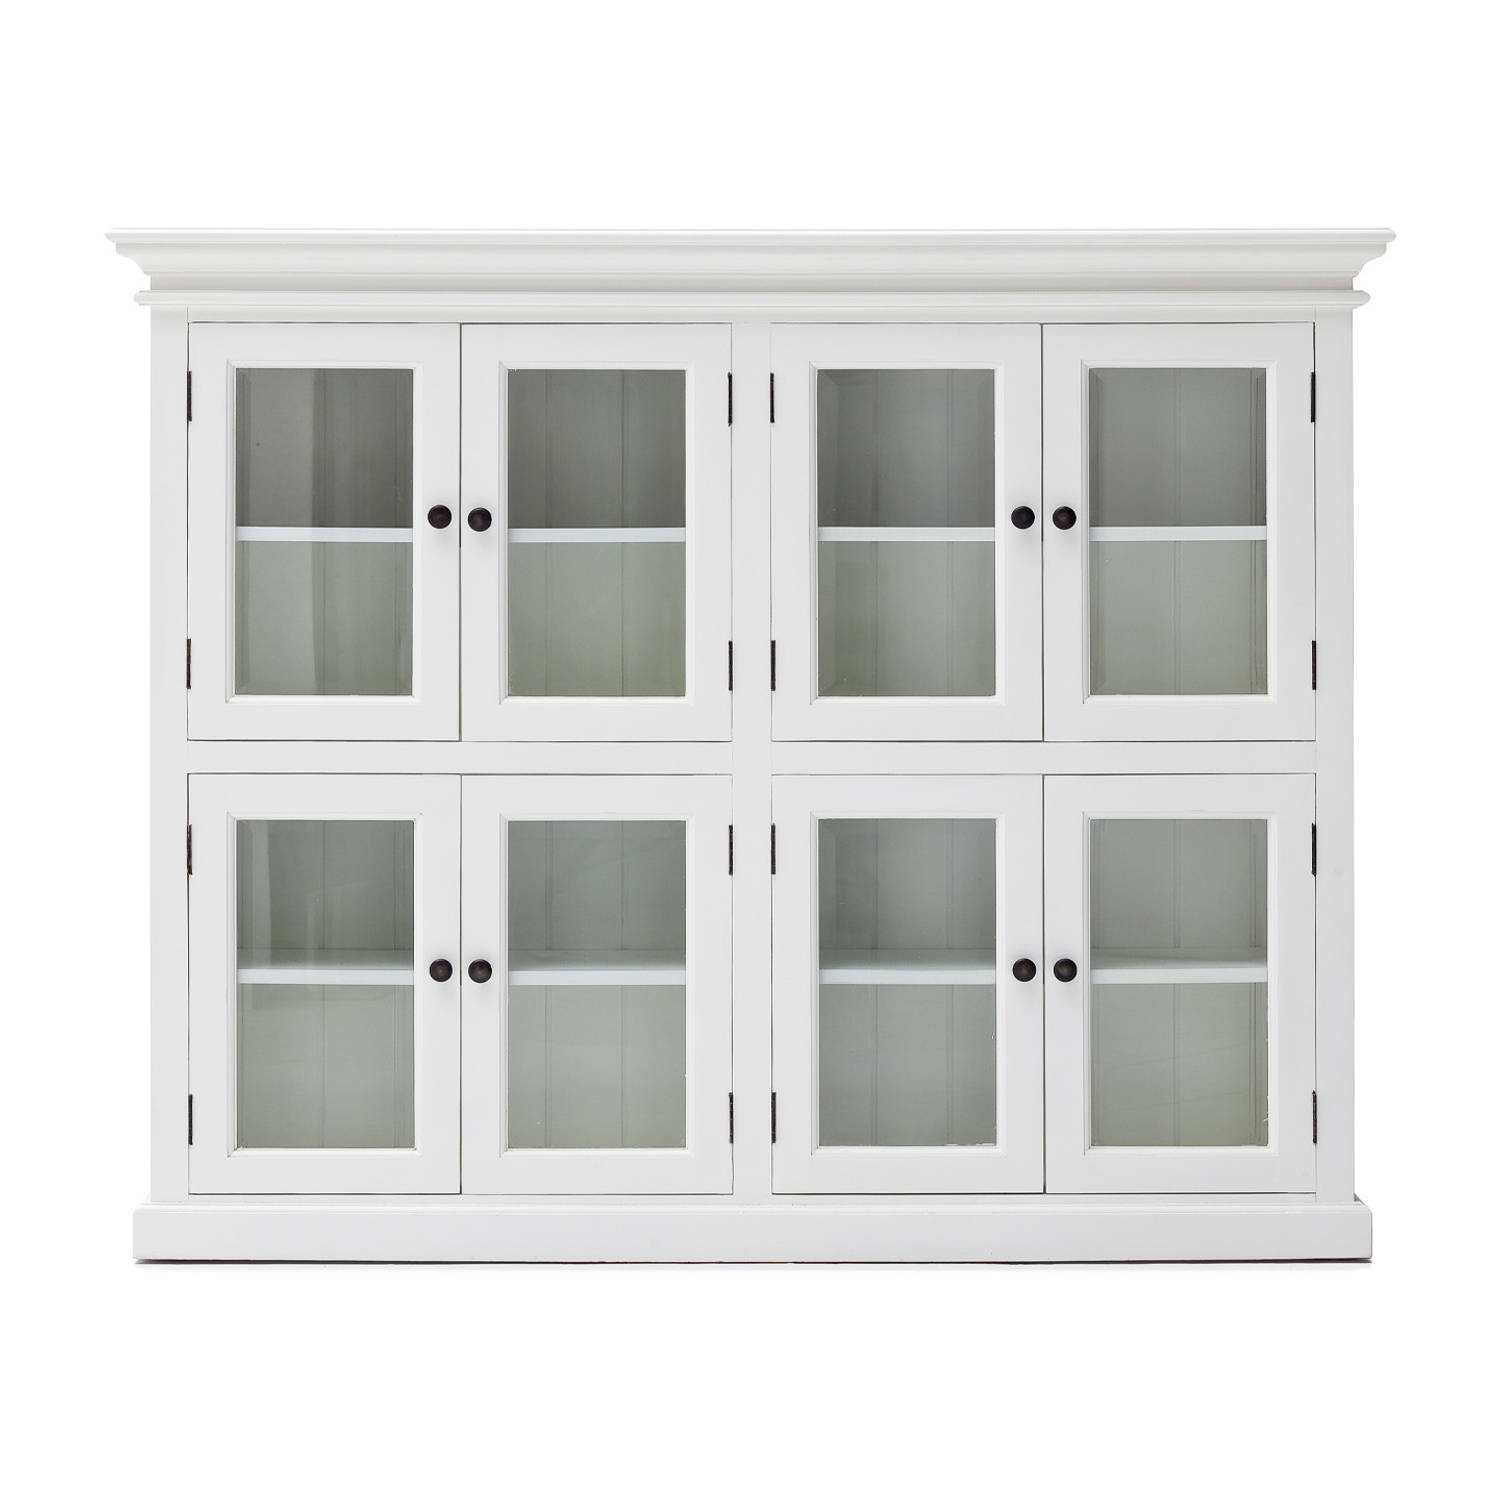 Hioshop Halifax vitrinekast met 8 glazen deuren, in wit.